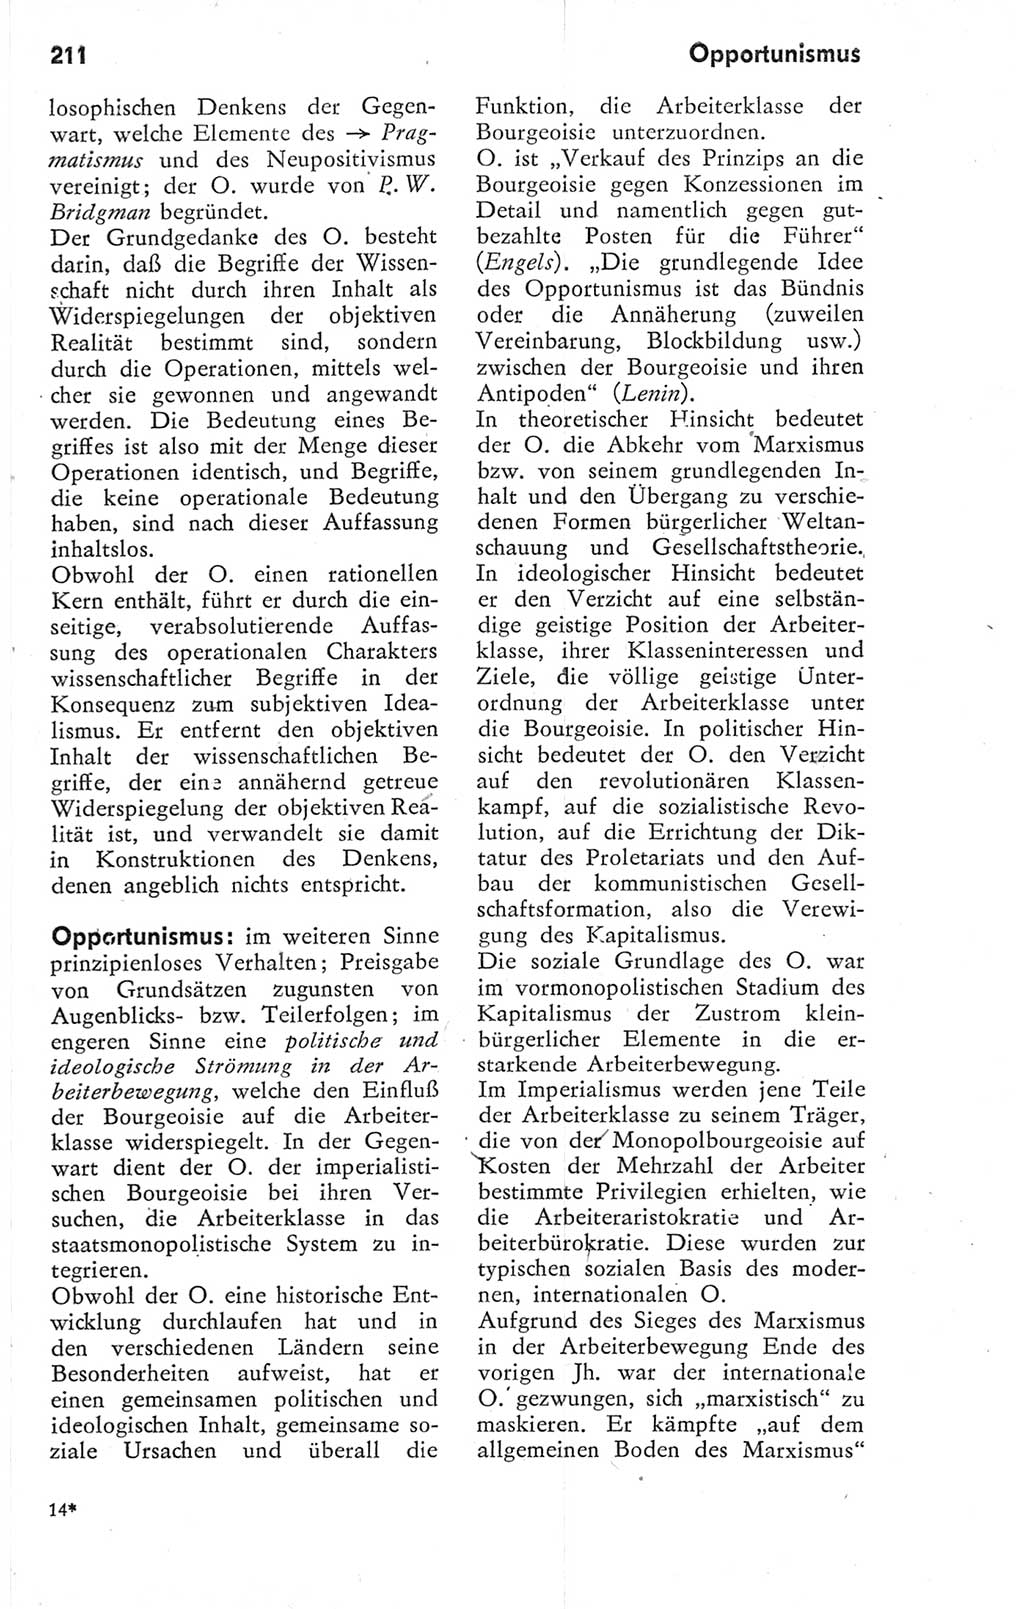 Kleines Wörterbuch der marxistisch-leninistischen Philosophie [Deutsche Demokratische Republik (DDR)] 1974, Seite 211 (Kl. Wb. ML Phil. DDR 1974, S. 211)